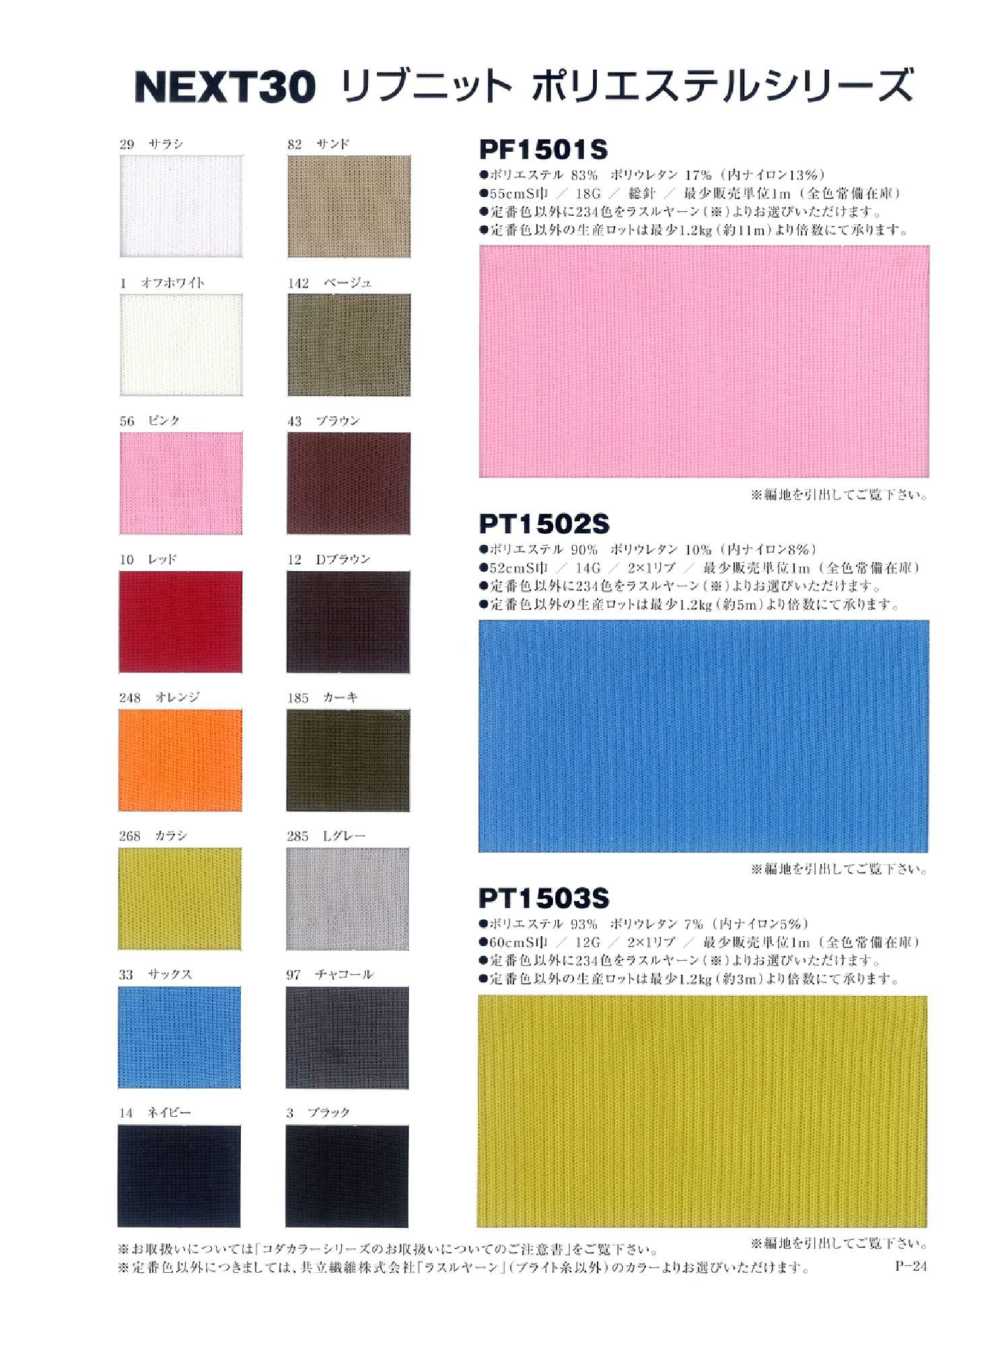 PT1502S Polyester 2 X 1 Spun Inflow[Rib Knit] NEXT30